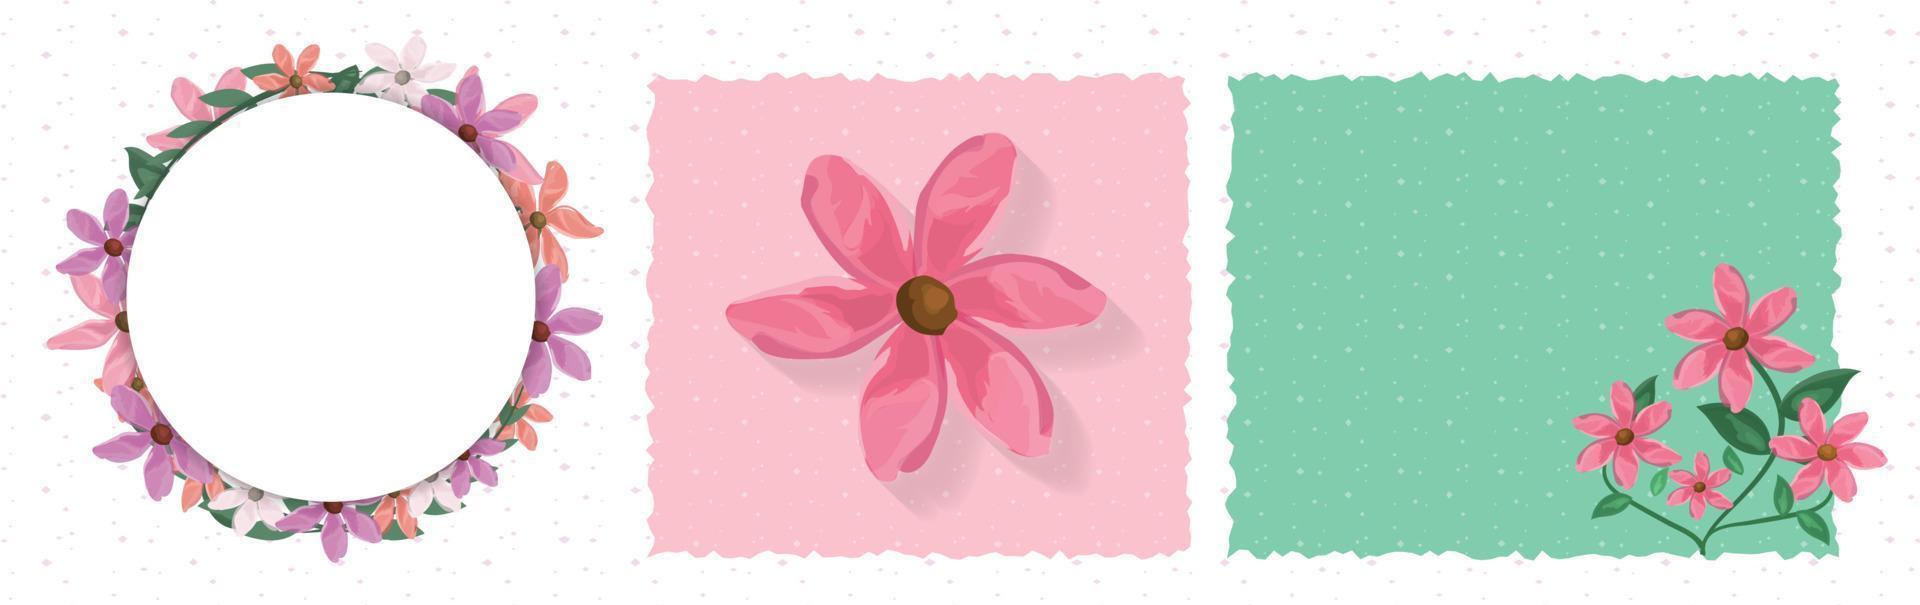 Vorlagenlayout für Grußkarten mit Vektoraquarelleffektblumen im Rahmen und Platz für Text für Wünsche und Grüße. Illustration mit Kopienraum und süßem, schönem Blumendekor vektor